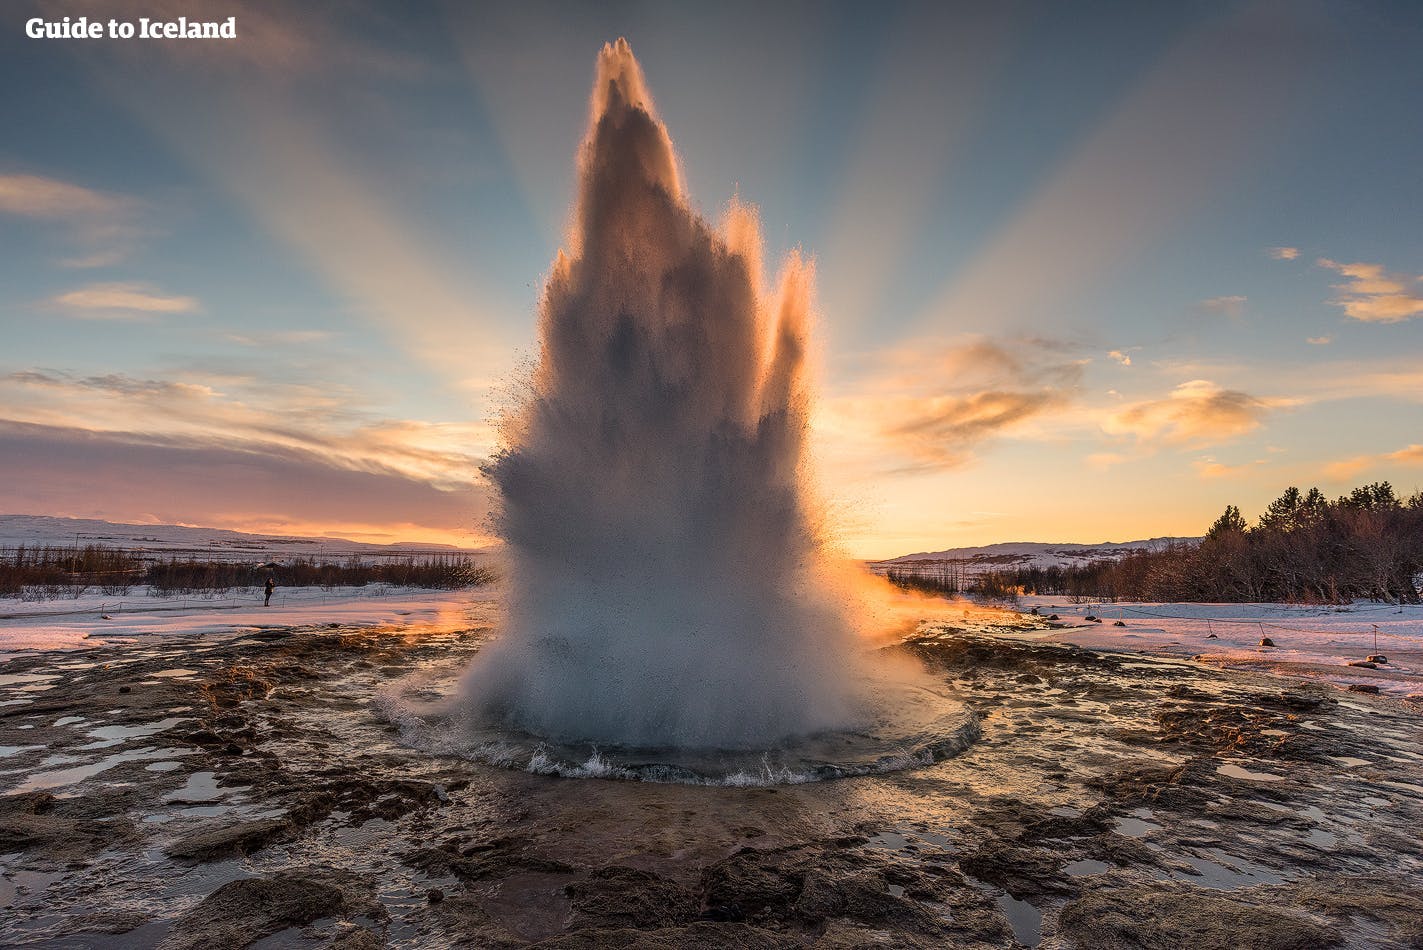 Visitez le Cercle d'Or et voyez le geyser Strokkur surgir dans une grande colonne d'eau.